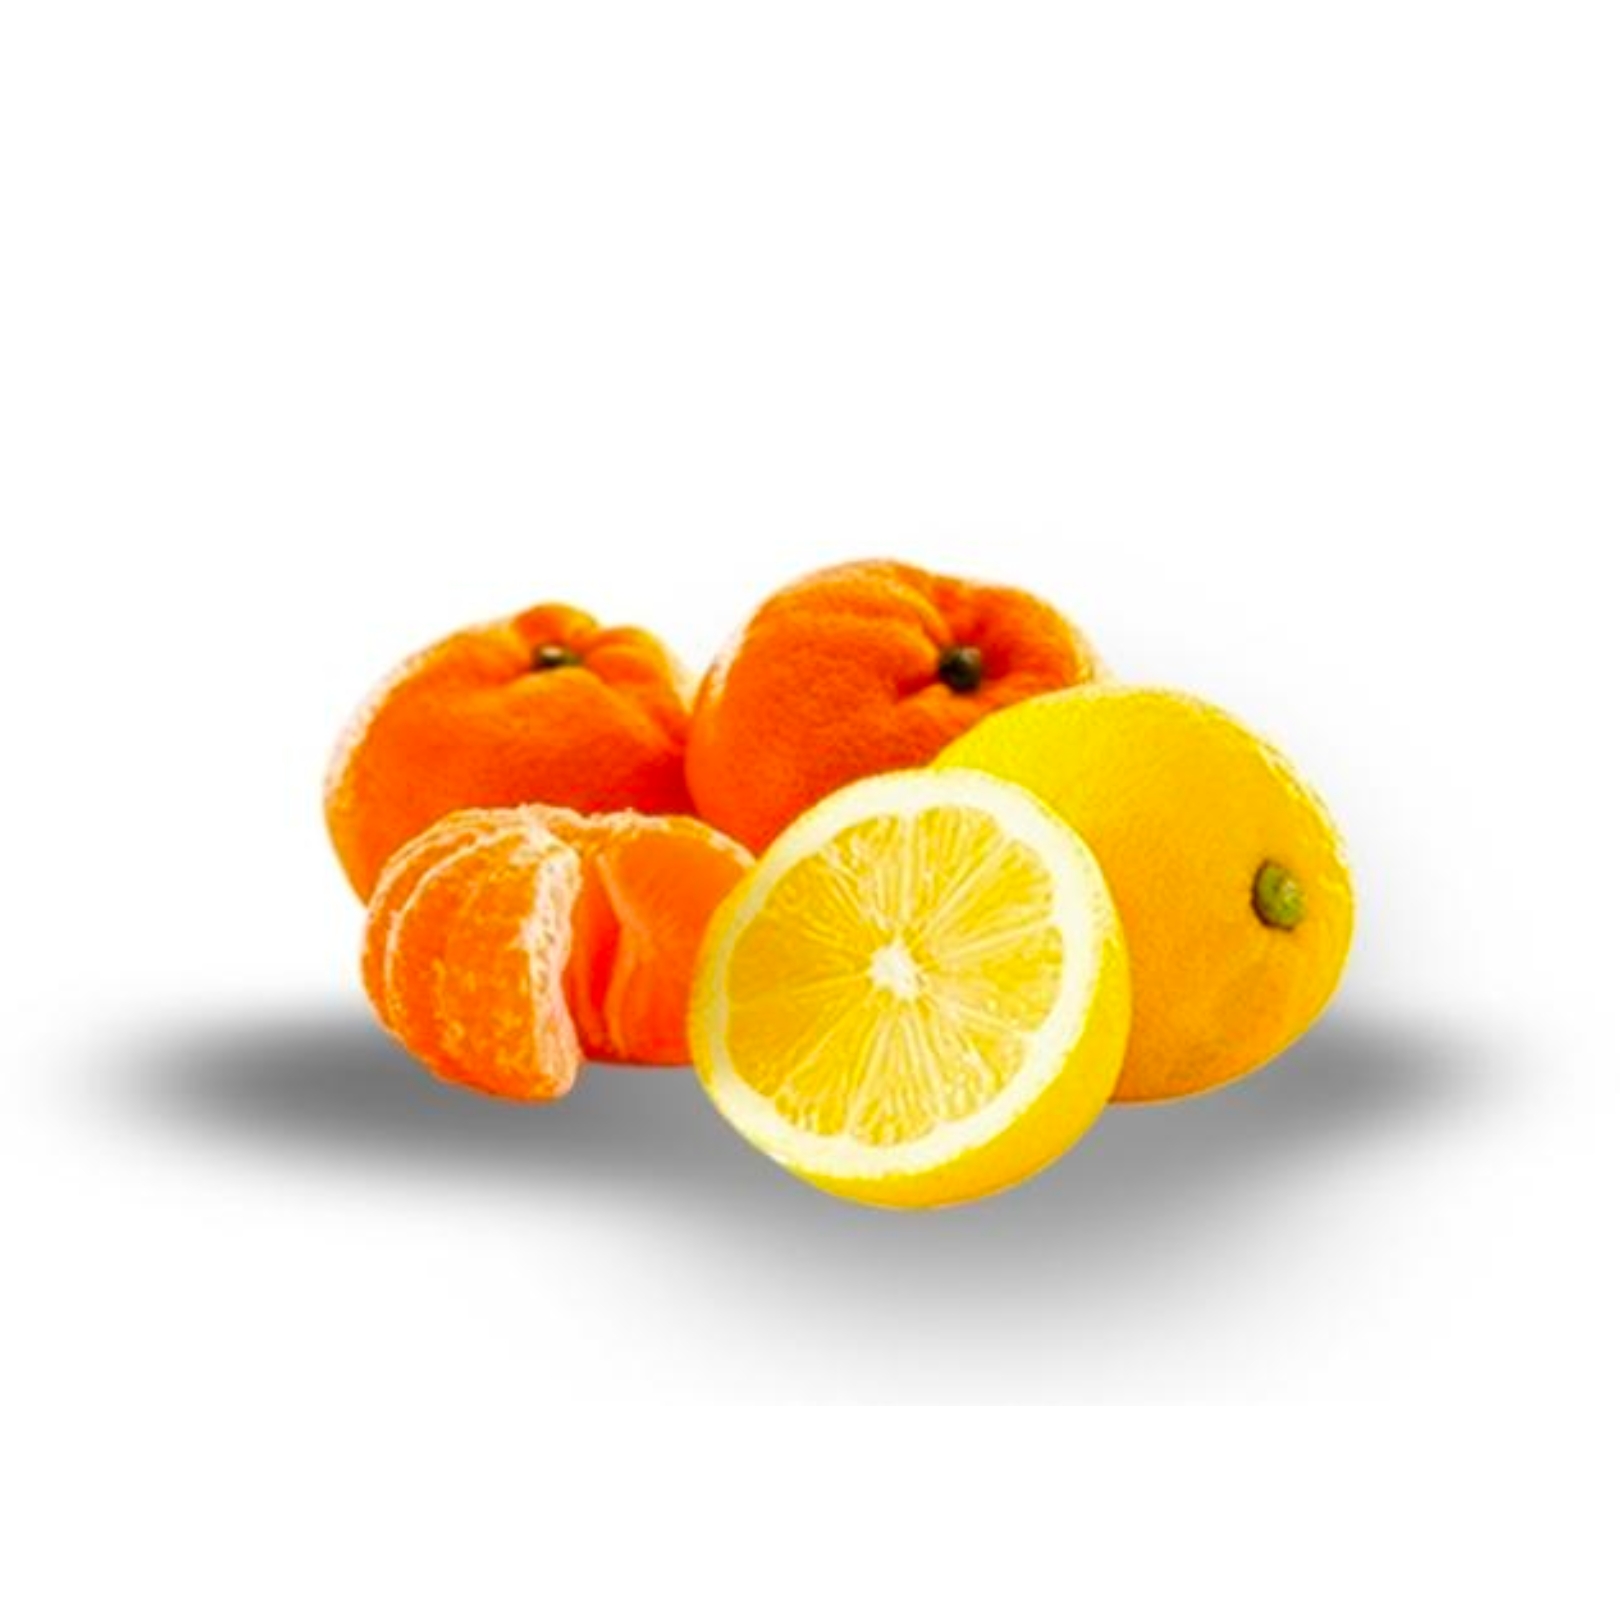 Buy Mandarin Lemon Online NZ - Twisted Citrus